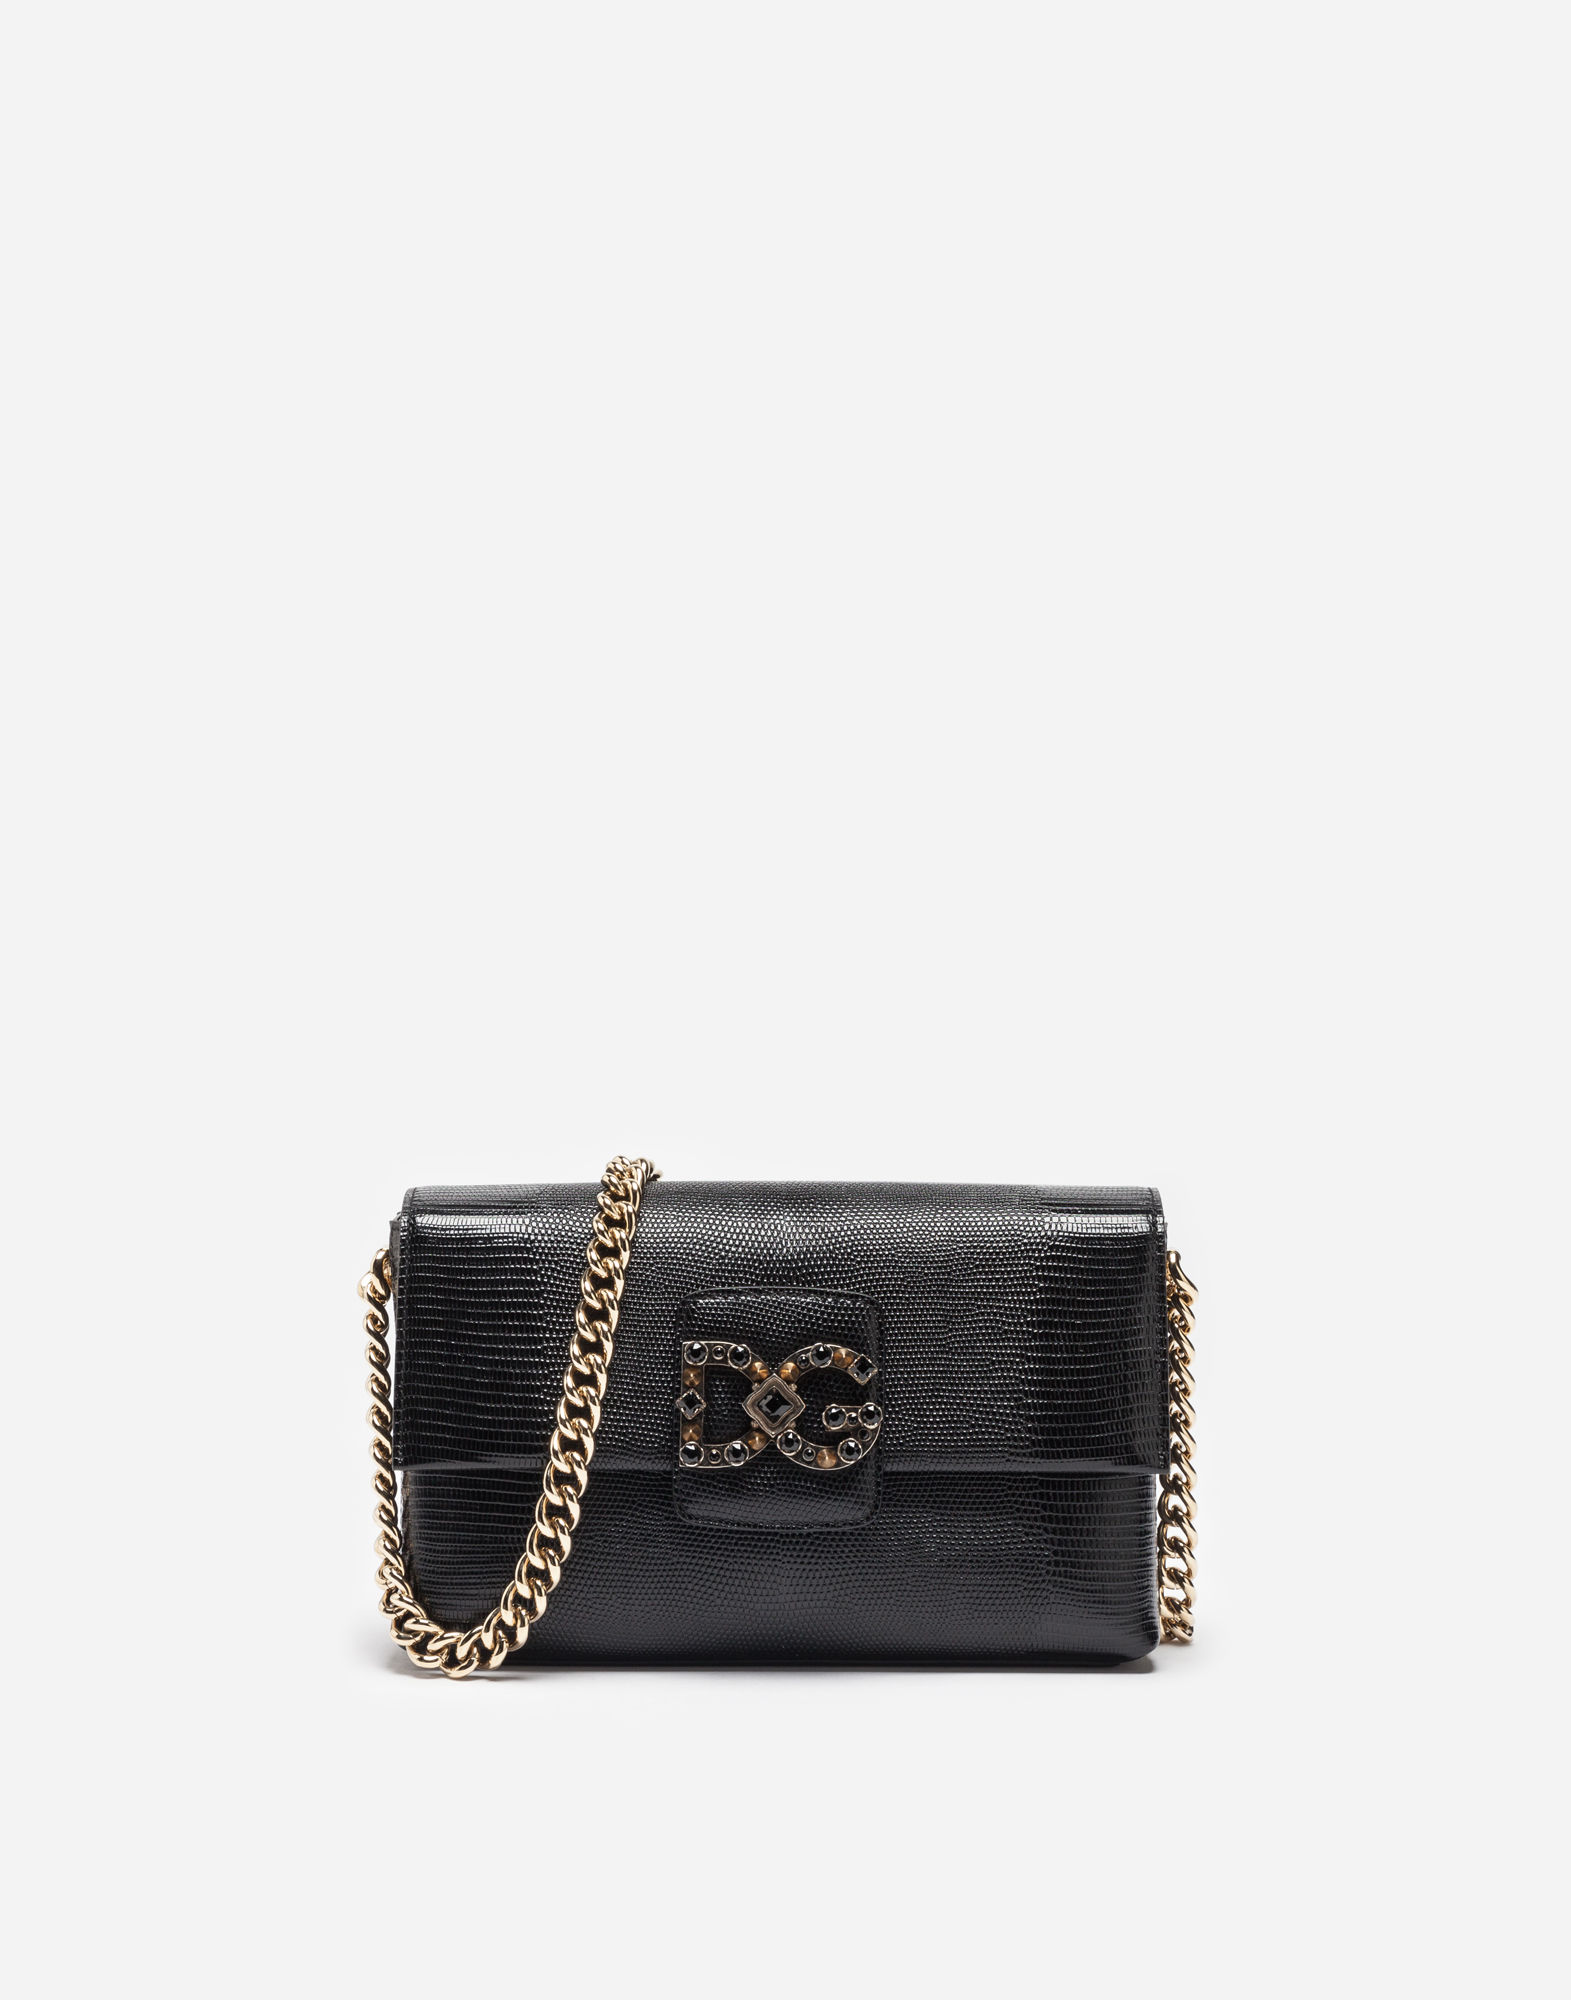 Dolce & Gabbana Dg Millennials Bag In Black Leather In Nero | ModeSens